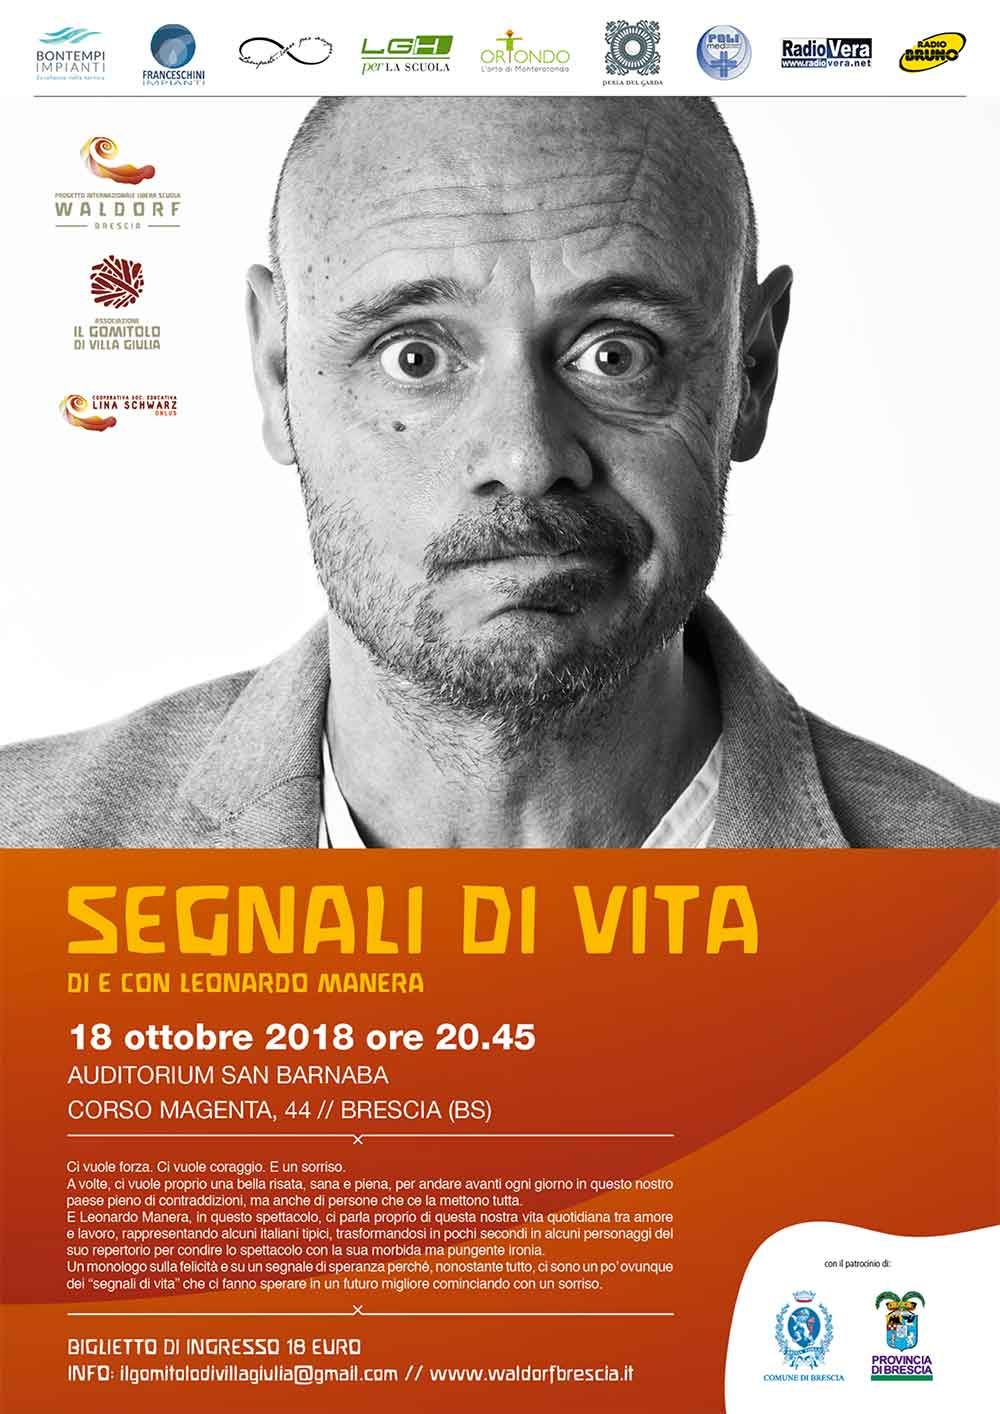 https://www.waldorfbrescia.it/evento/spettacolo-segnali-vita-leonardo-manera/